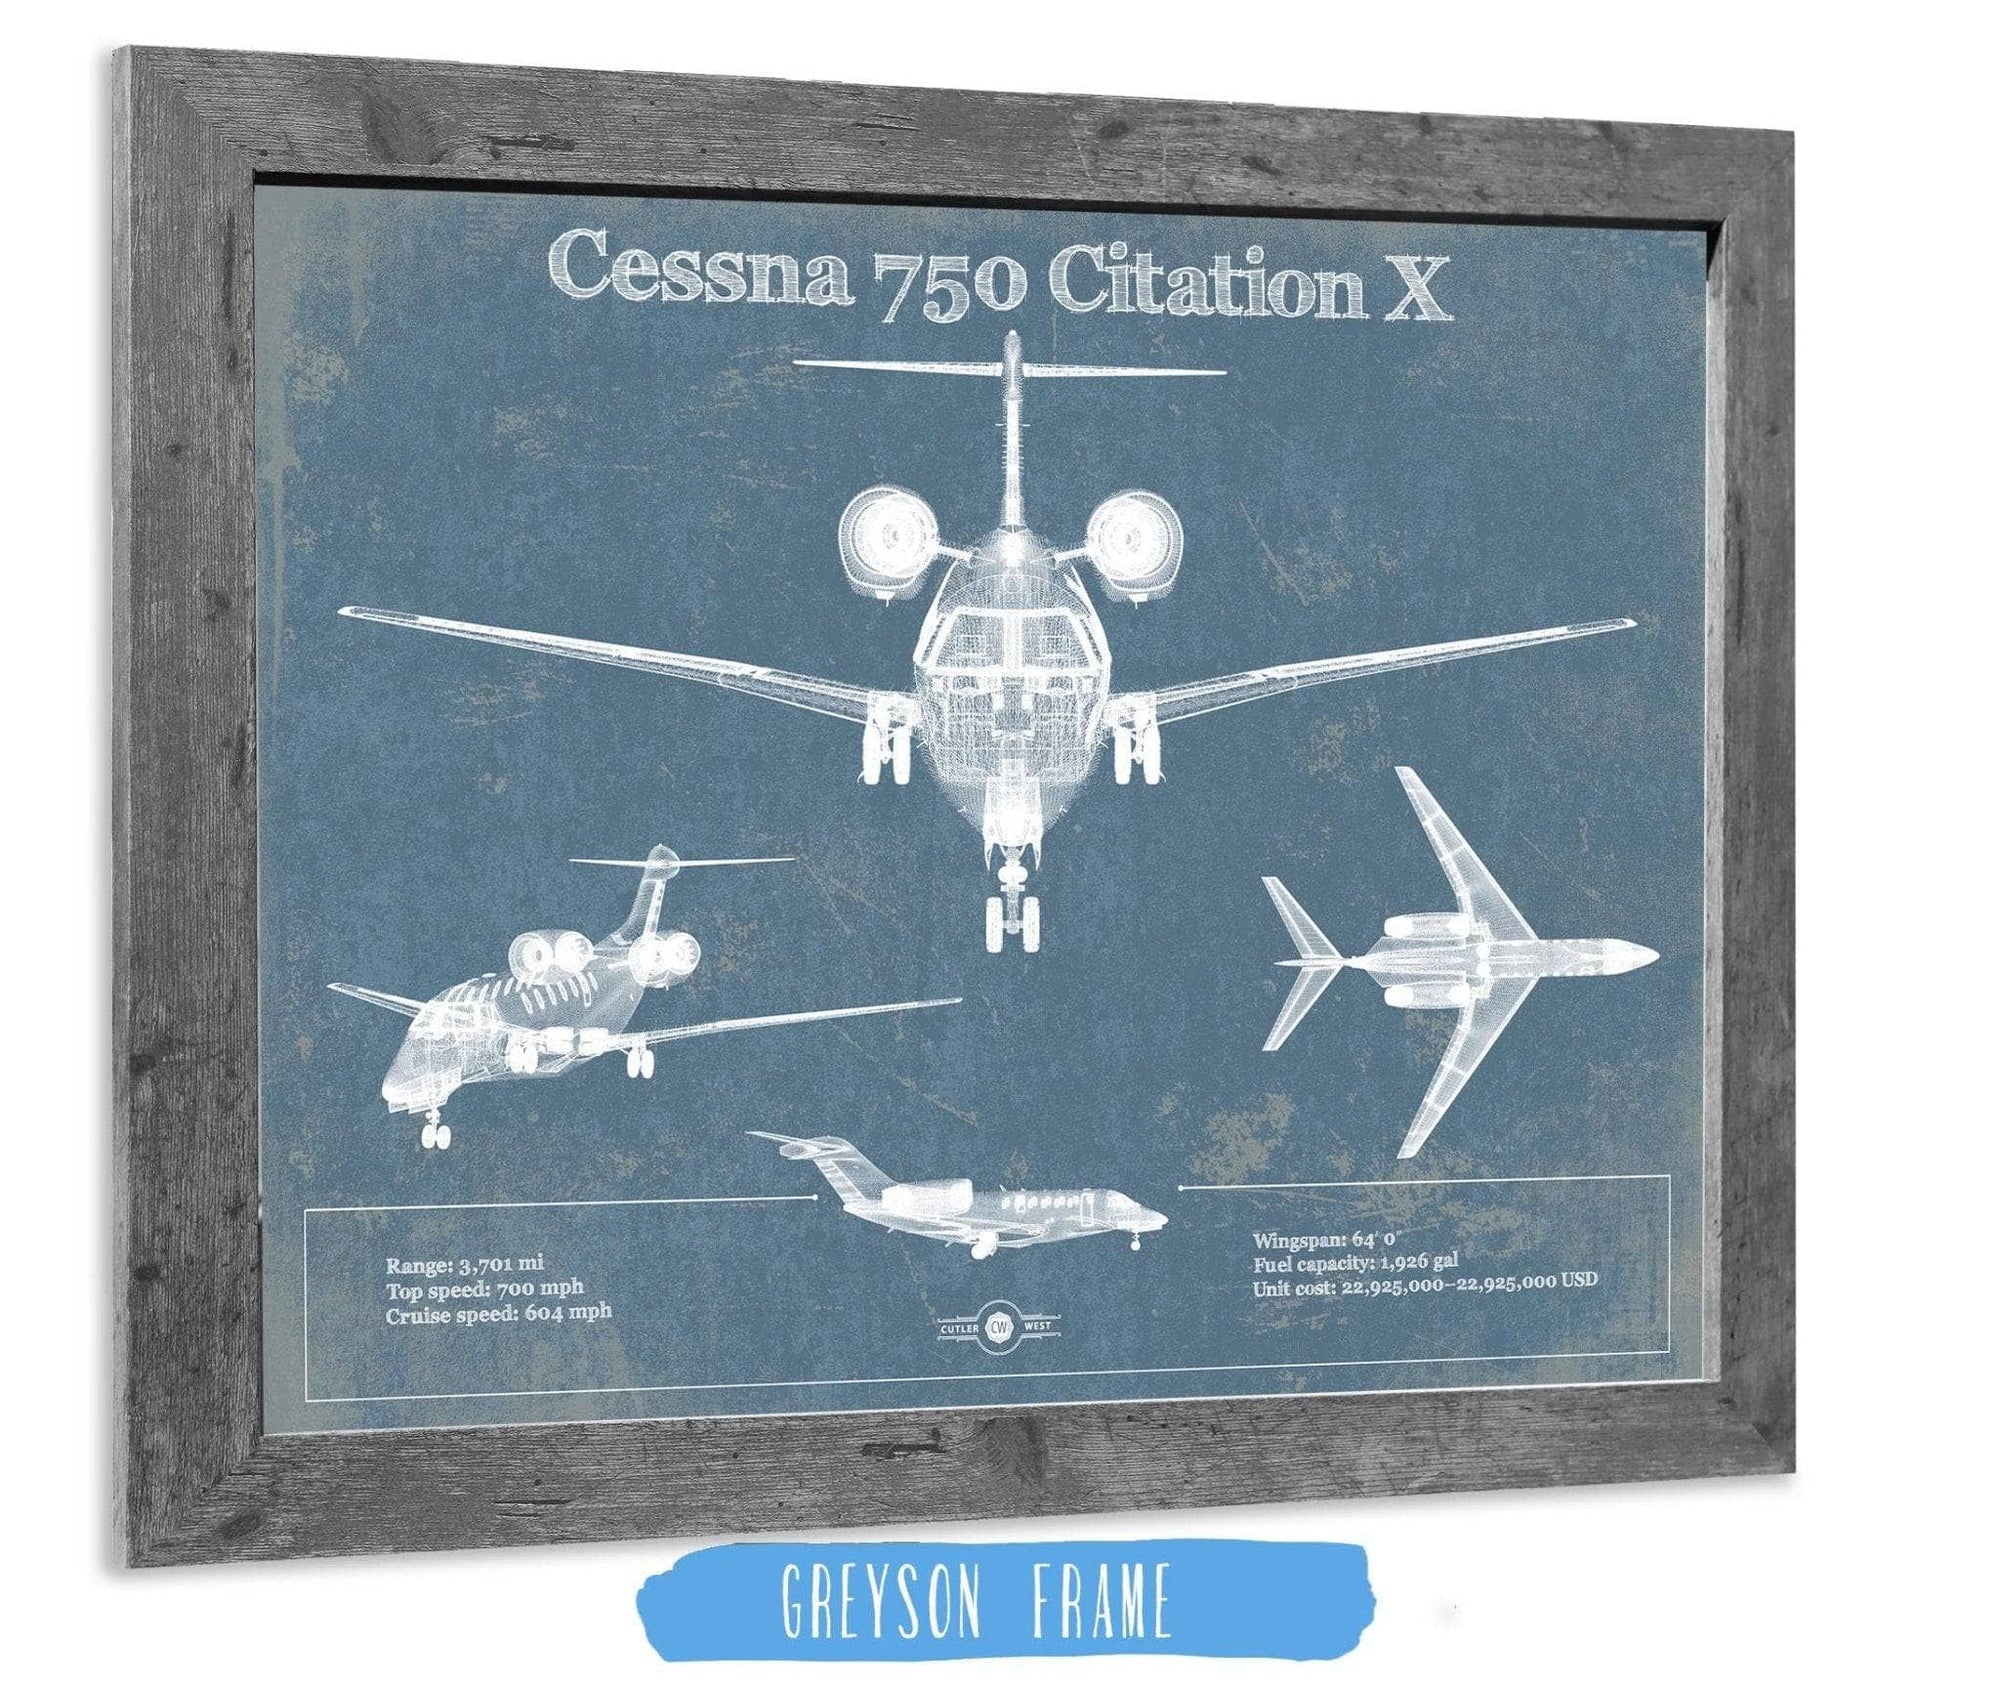 Cutler West Cessna Collection 14" x 11" / Greyson Frame Cessna 750 Citation X Original Blueprint Art 845000220_49998